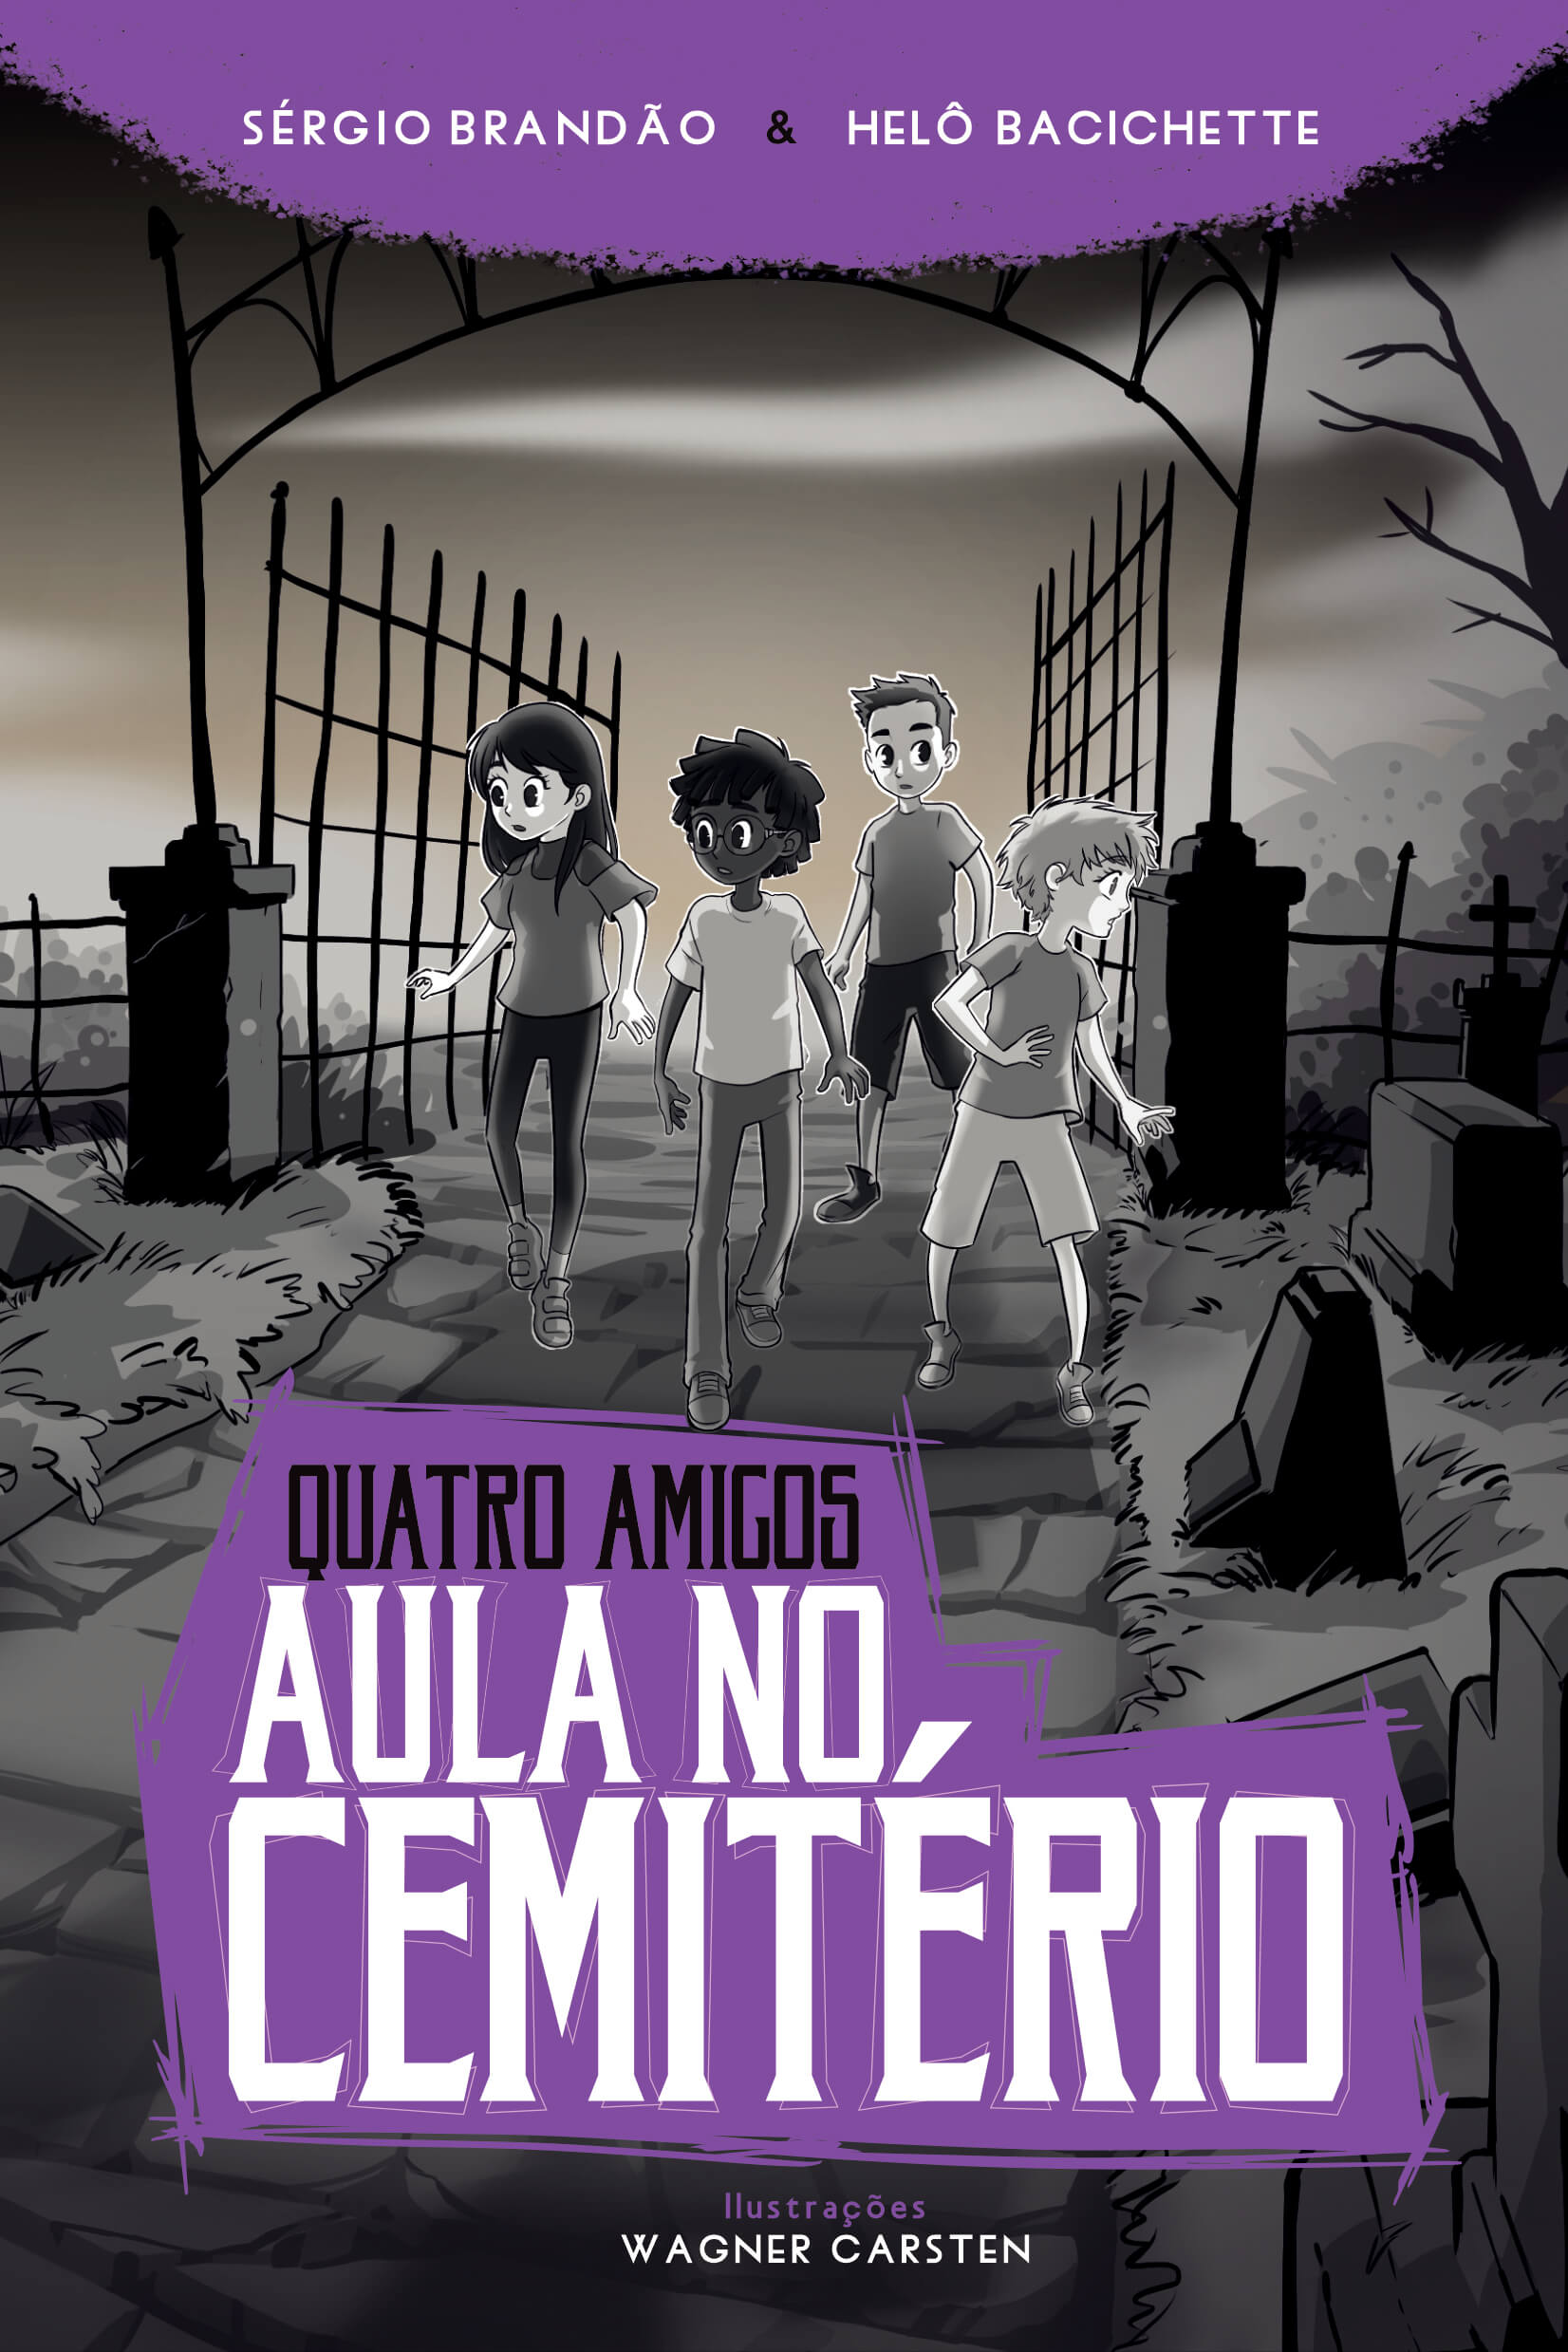 Capa de livro com ilustração de quatro crianças entrando em um cemitério